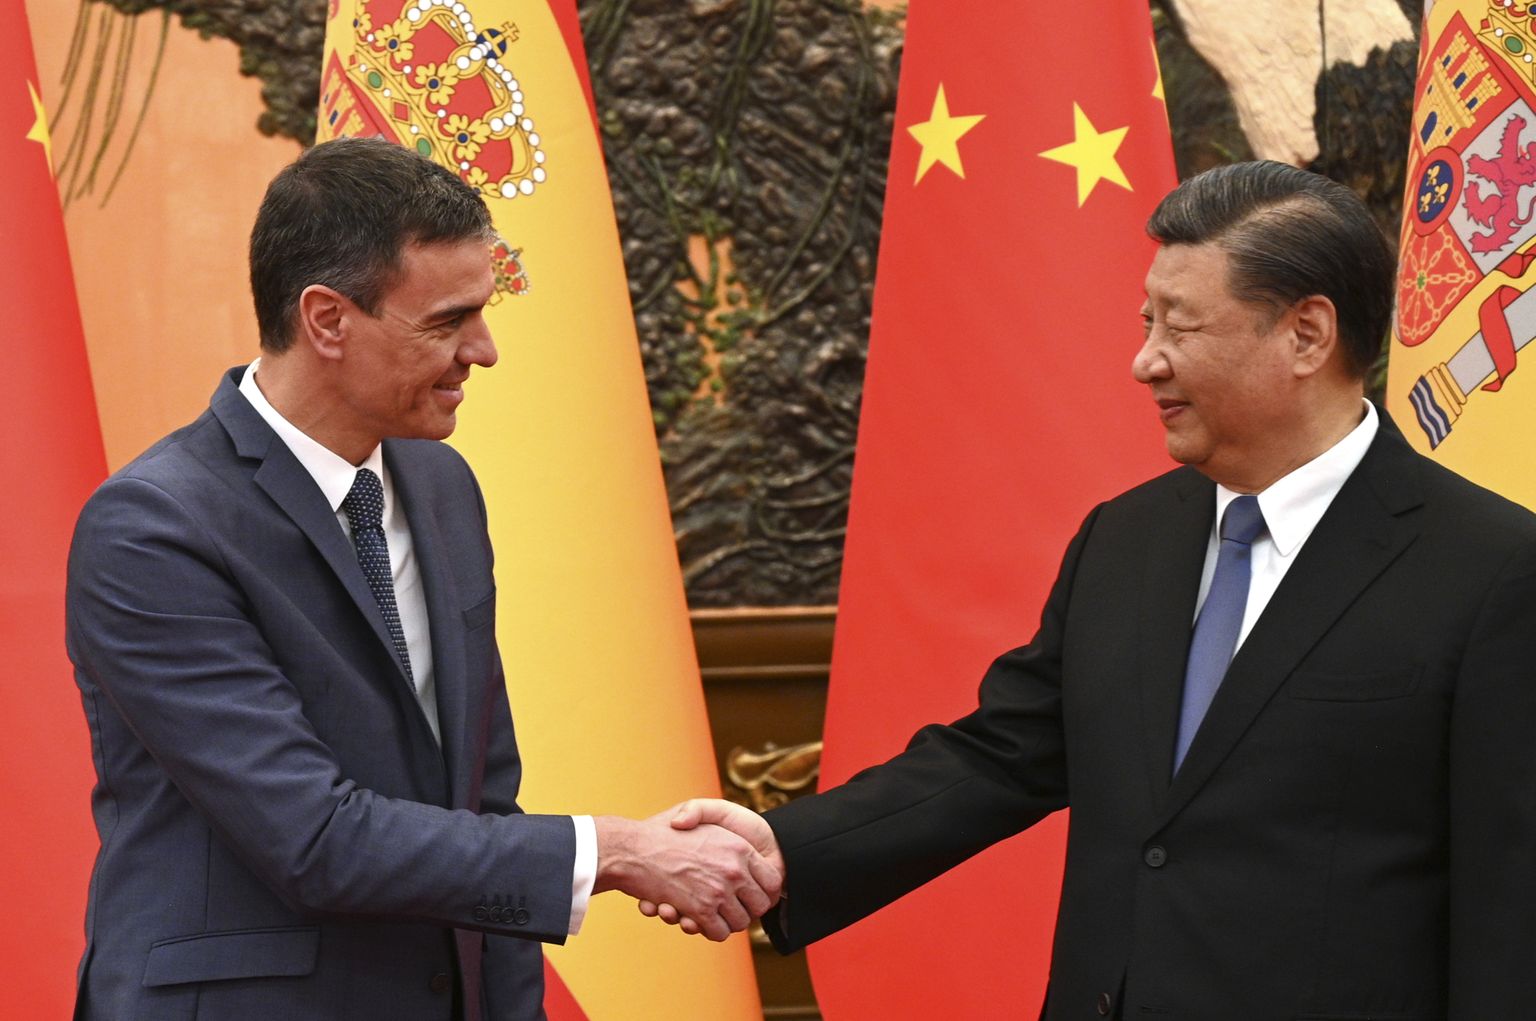 Spānijas premjers Pedro Sančess un Ķīnas diktators Sji Dzjiņpins